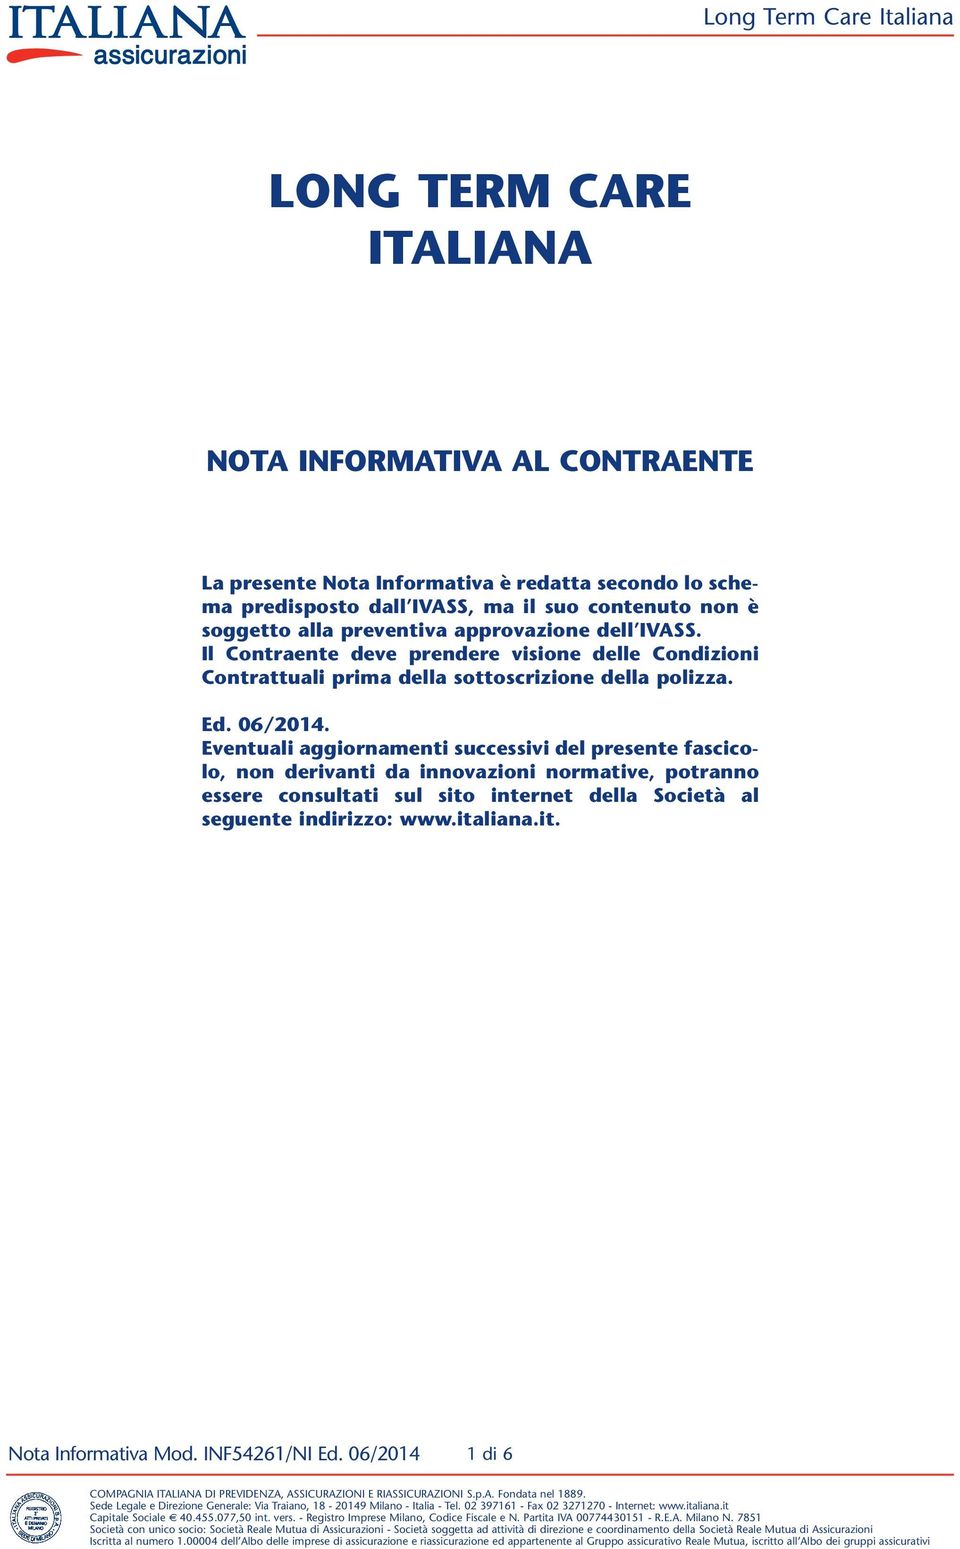 Il Contraente deve prendere visione delle Condizioni Contrattuali prima della sottoscrizione della polizza. Ed. 06/2014.